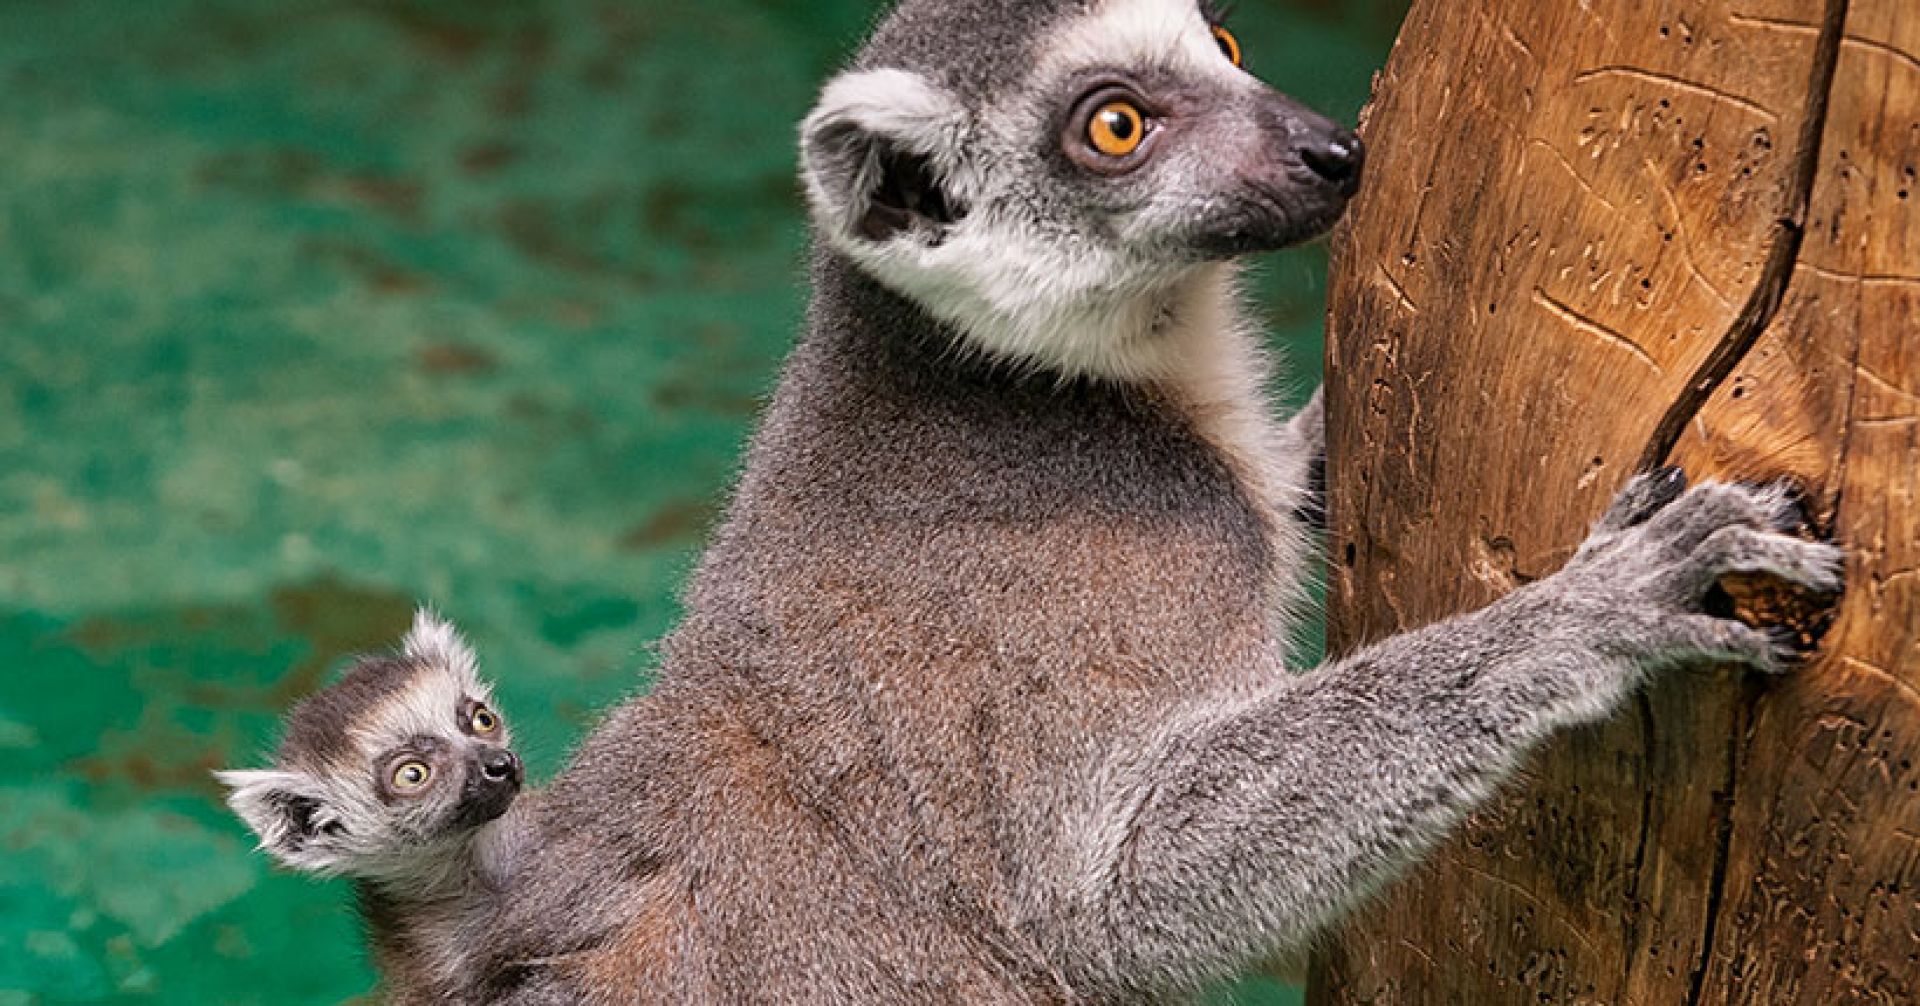 Lemur, 135 days